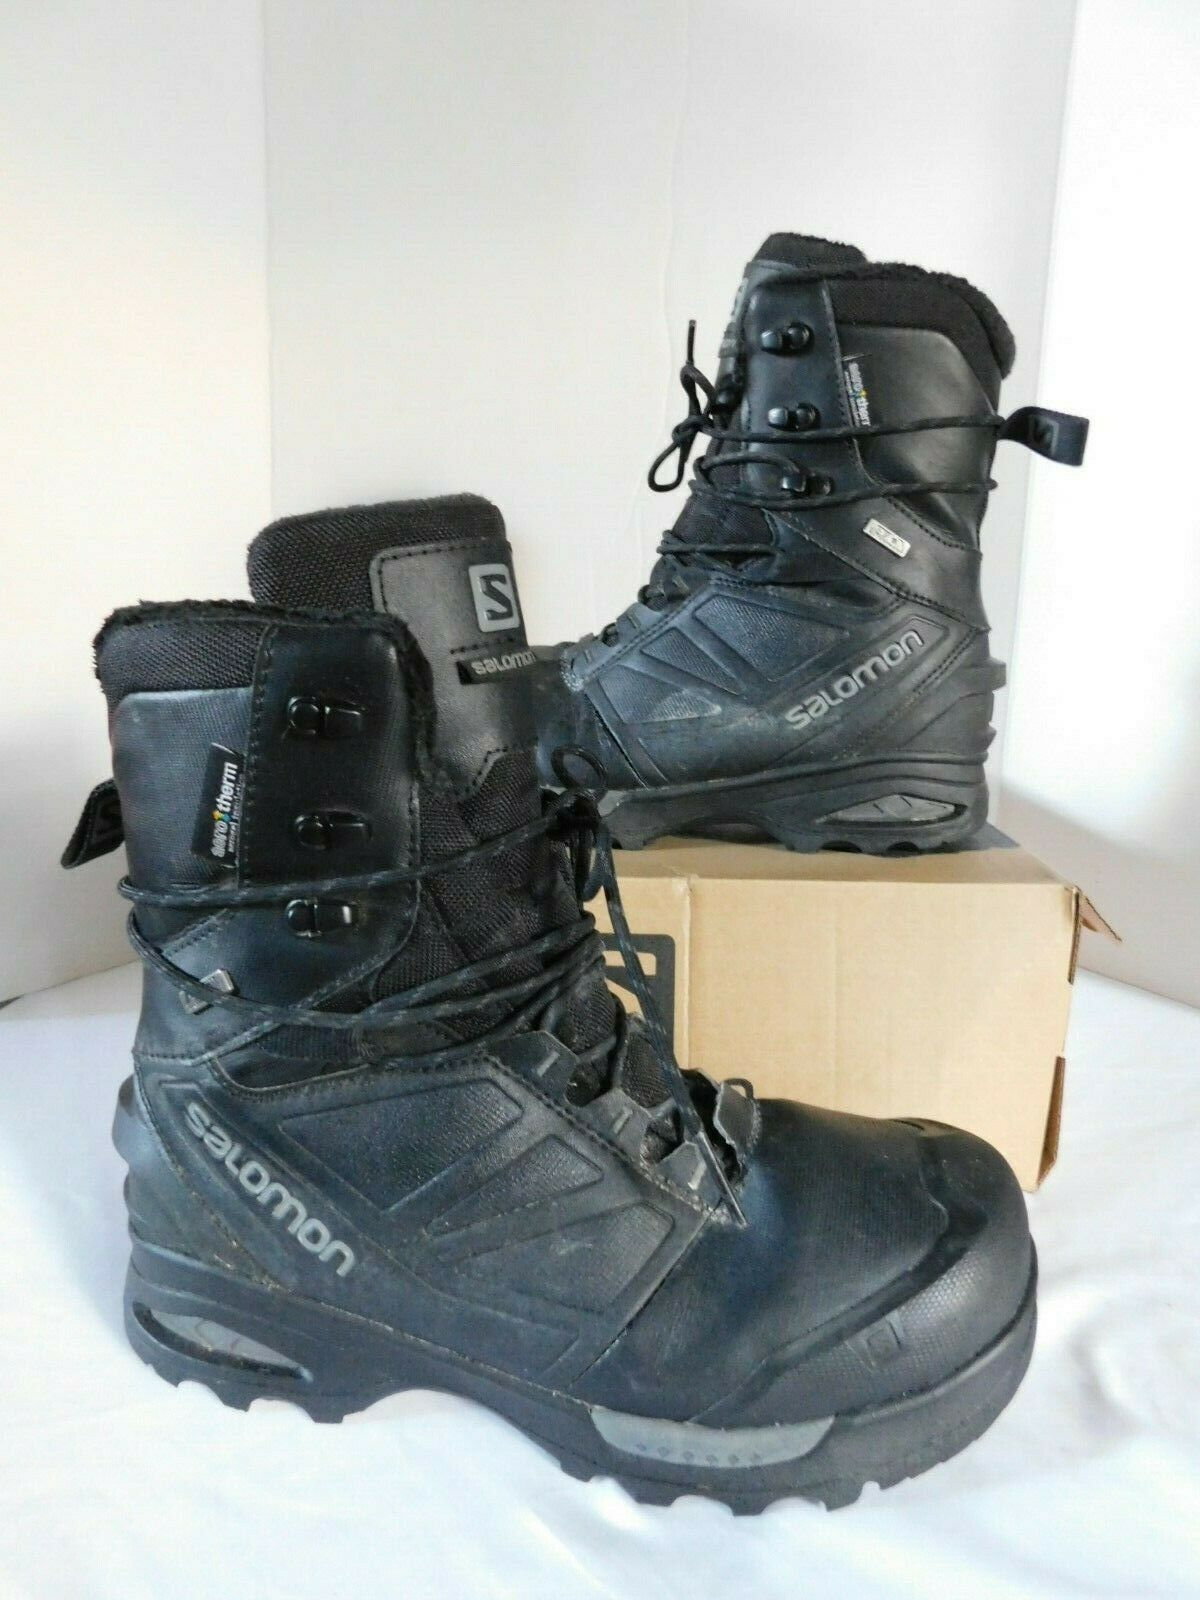 Salomon Toundra Pro CSWP Winter Hiking Boots Men's sz 9 M Black